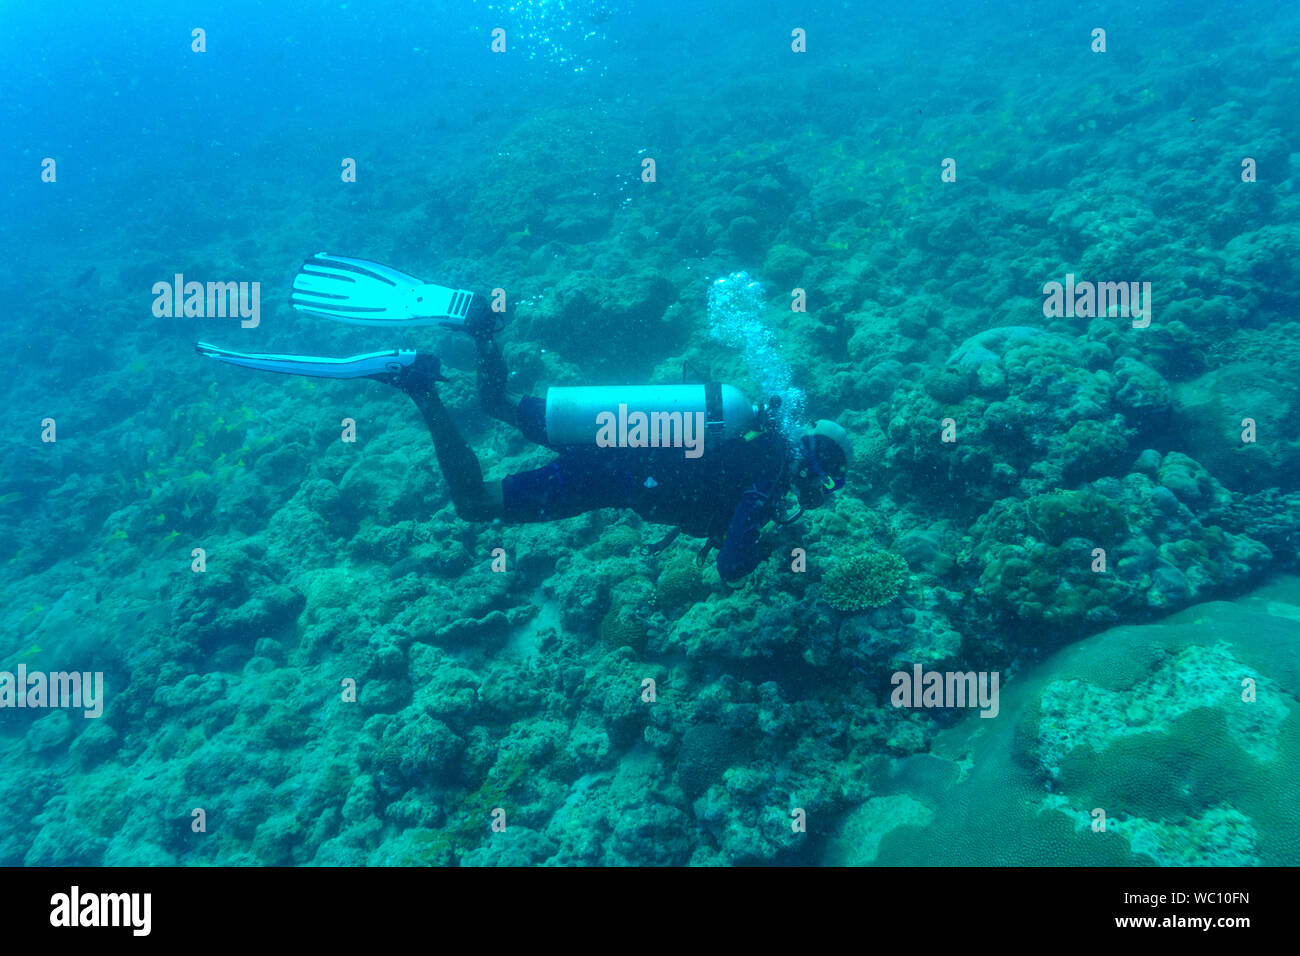 Un plongeur dving dans un récif de corail dans les îles Andaman (Inde) - près de Chidiya Tapu Banque D'Images